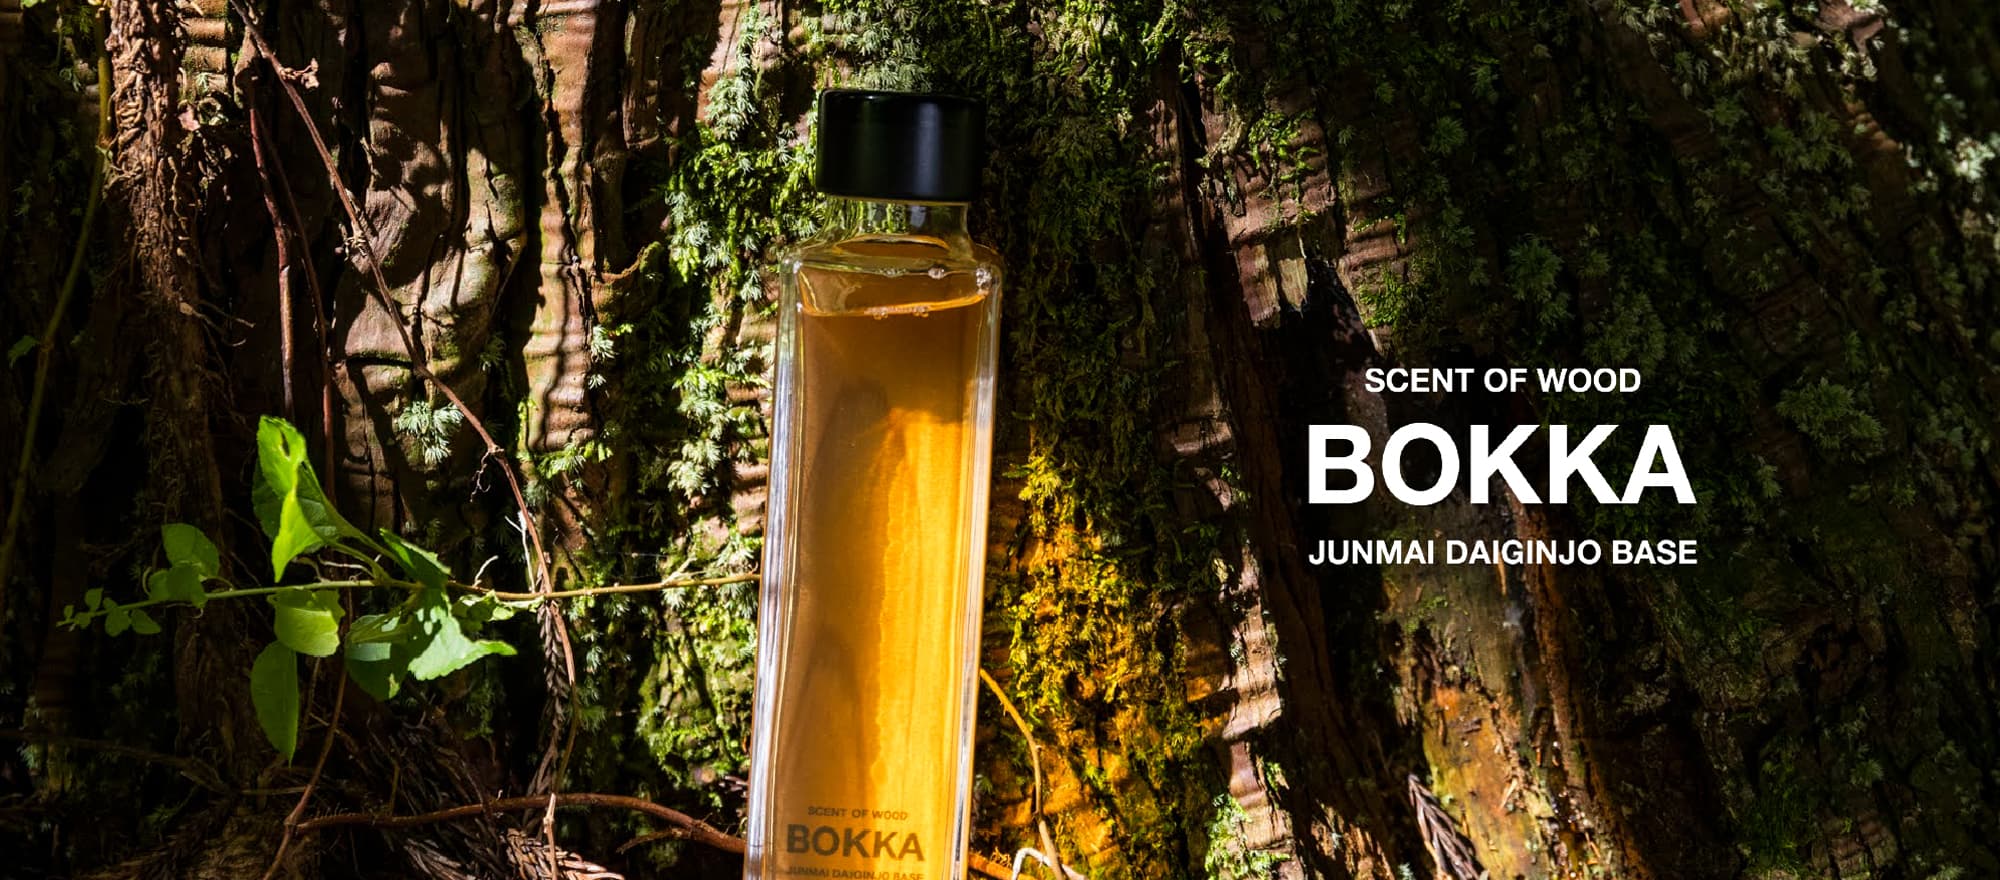 日本の伝統文化である日本酒に樹木の恵みを加えて完成したBOKKAは、和製ウイスキーを目指した日本酒リキュールの挑戦。